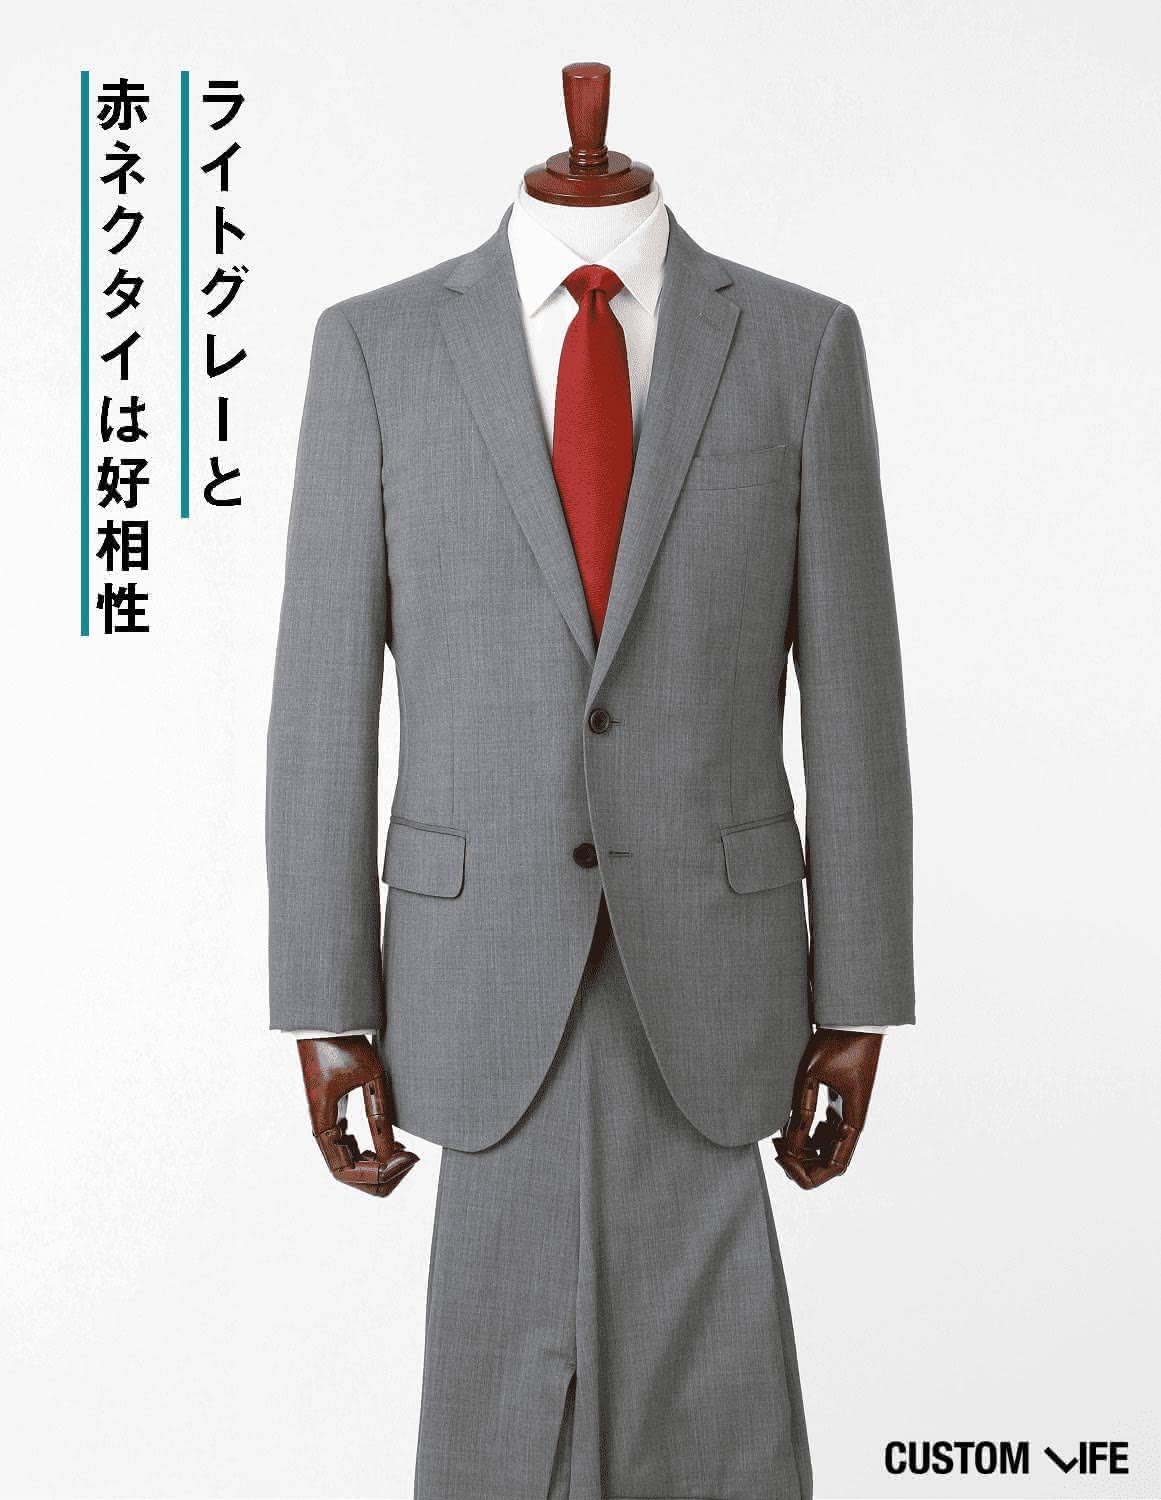 手持ちのスーツでおしゃれになろう すぐ実践できるおすすめコーデ9選 Customlife カスタムライフ